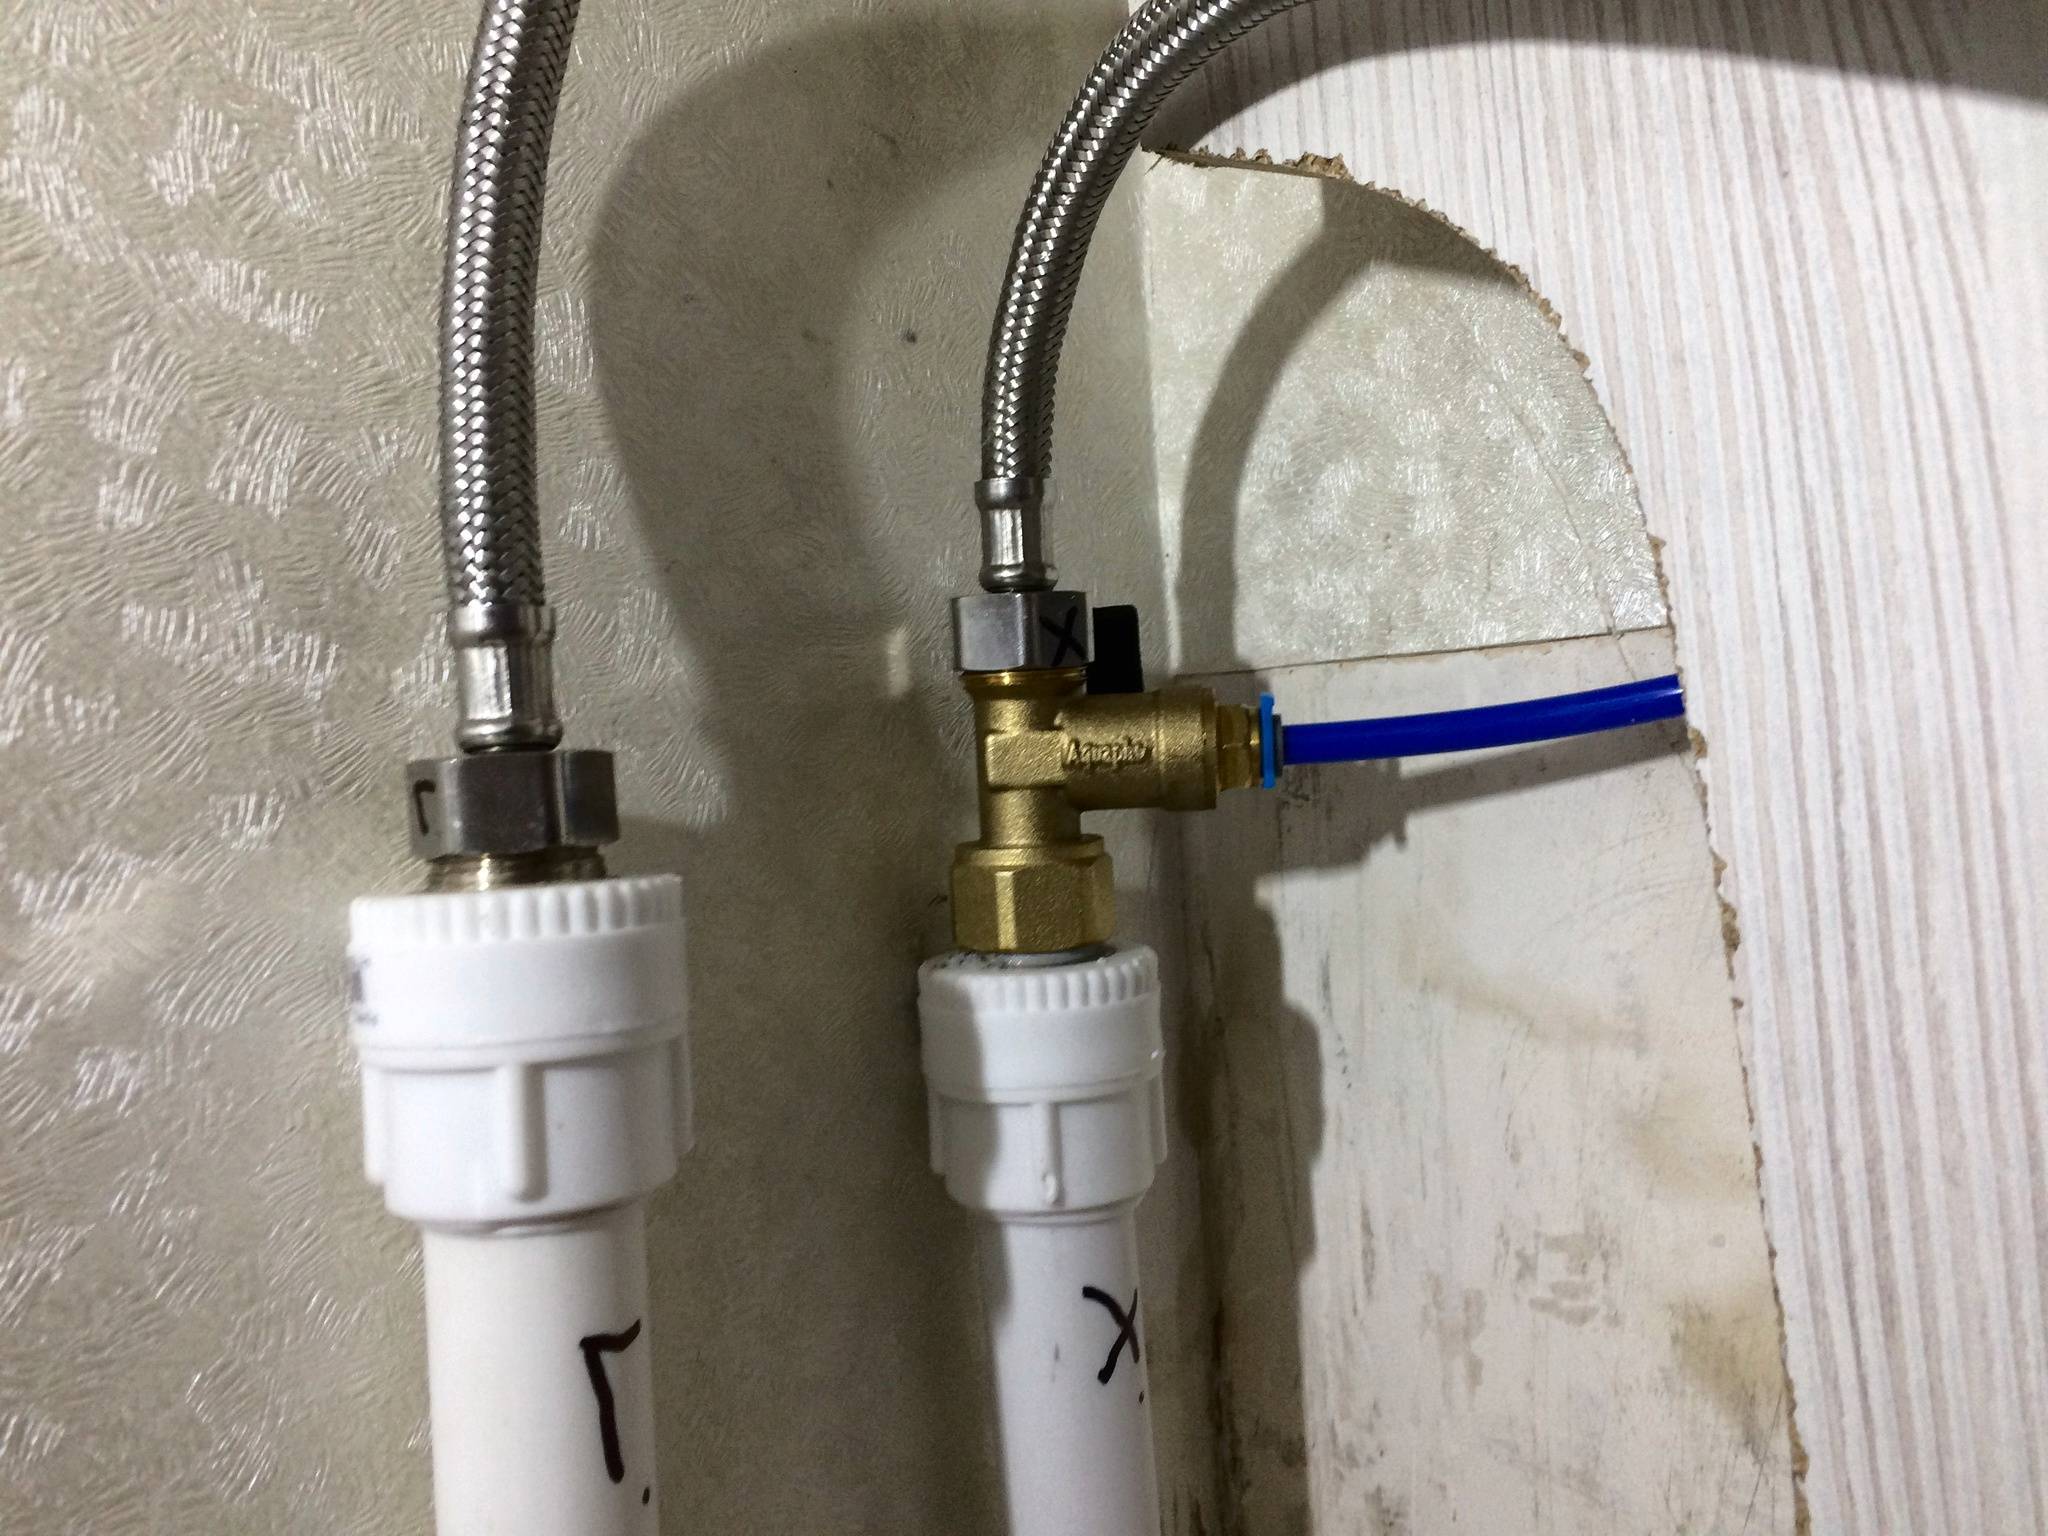 Фильтры питьевой воды: преимущества, функциональность и устройство кранов под них